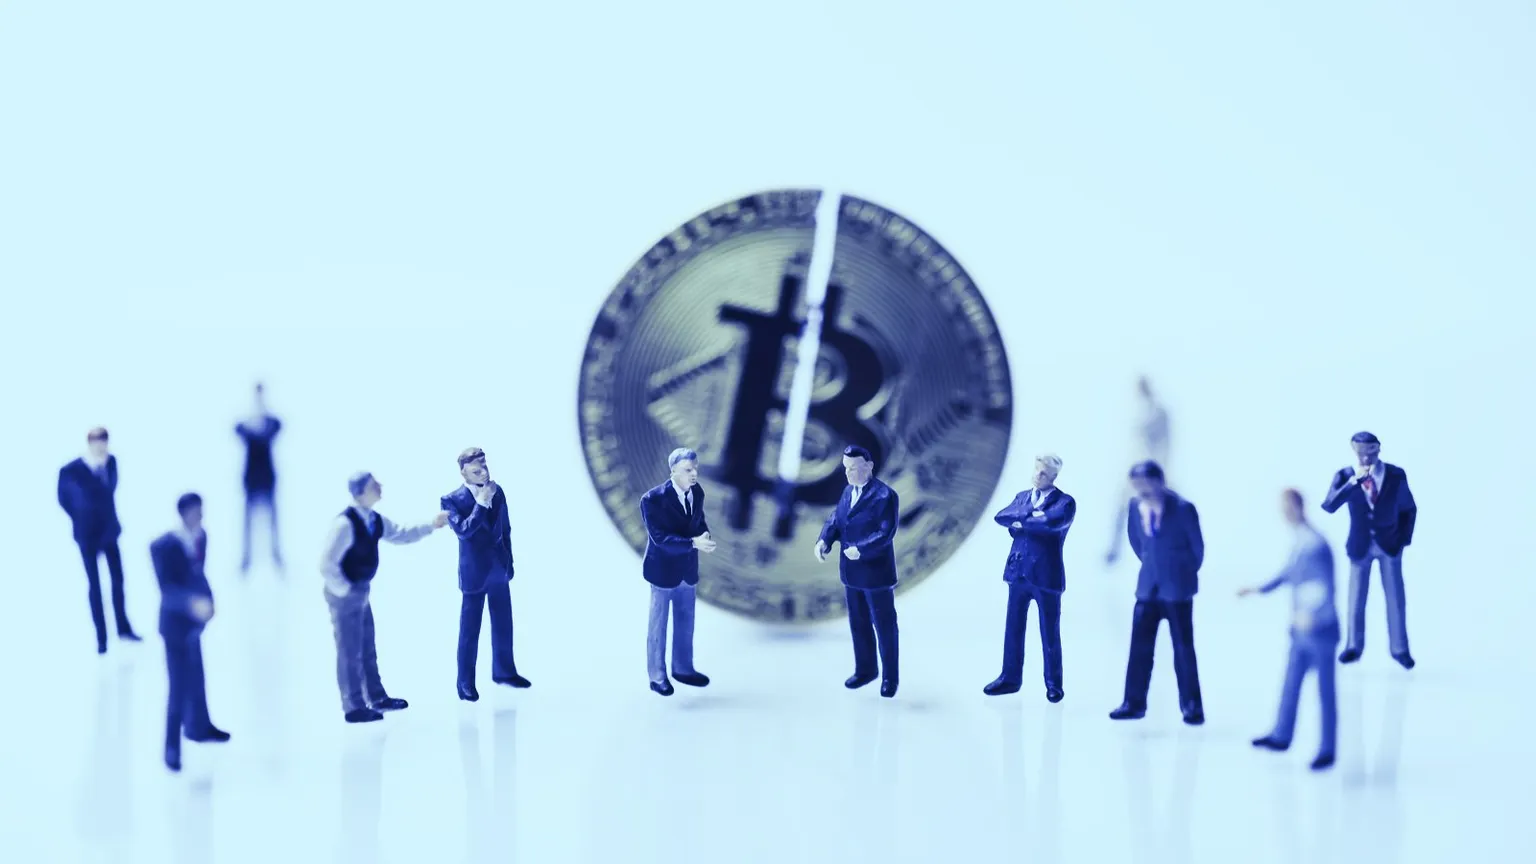 La reciente caída del precio del Bitcoin ha tenido un gran impacto en los prestamistas de criptomonedas. Imagen: Shutterstock